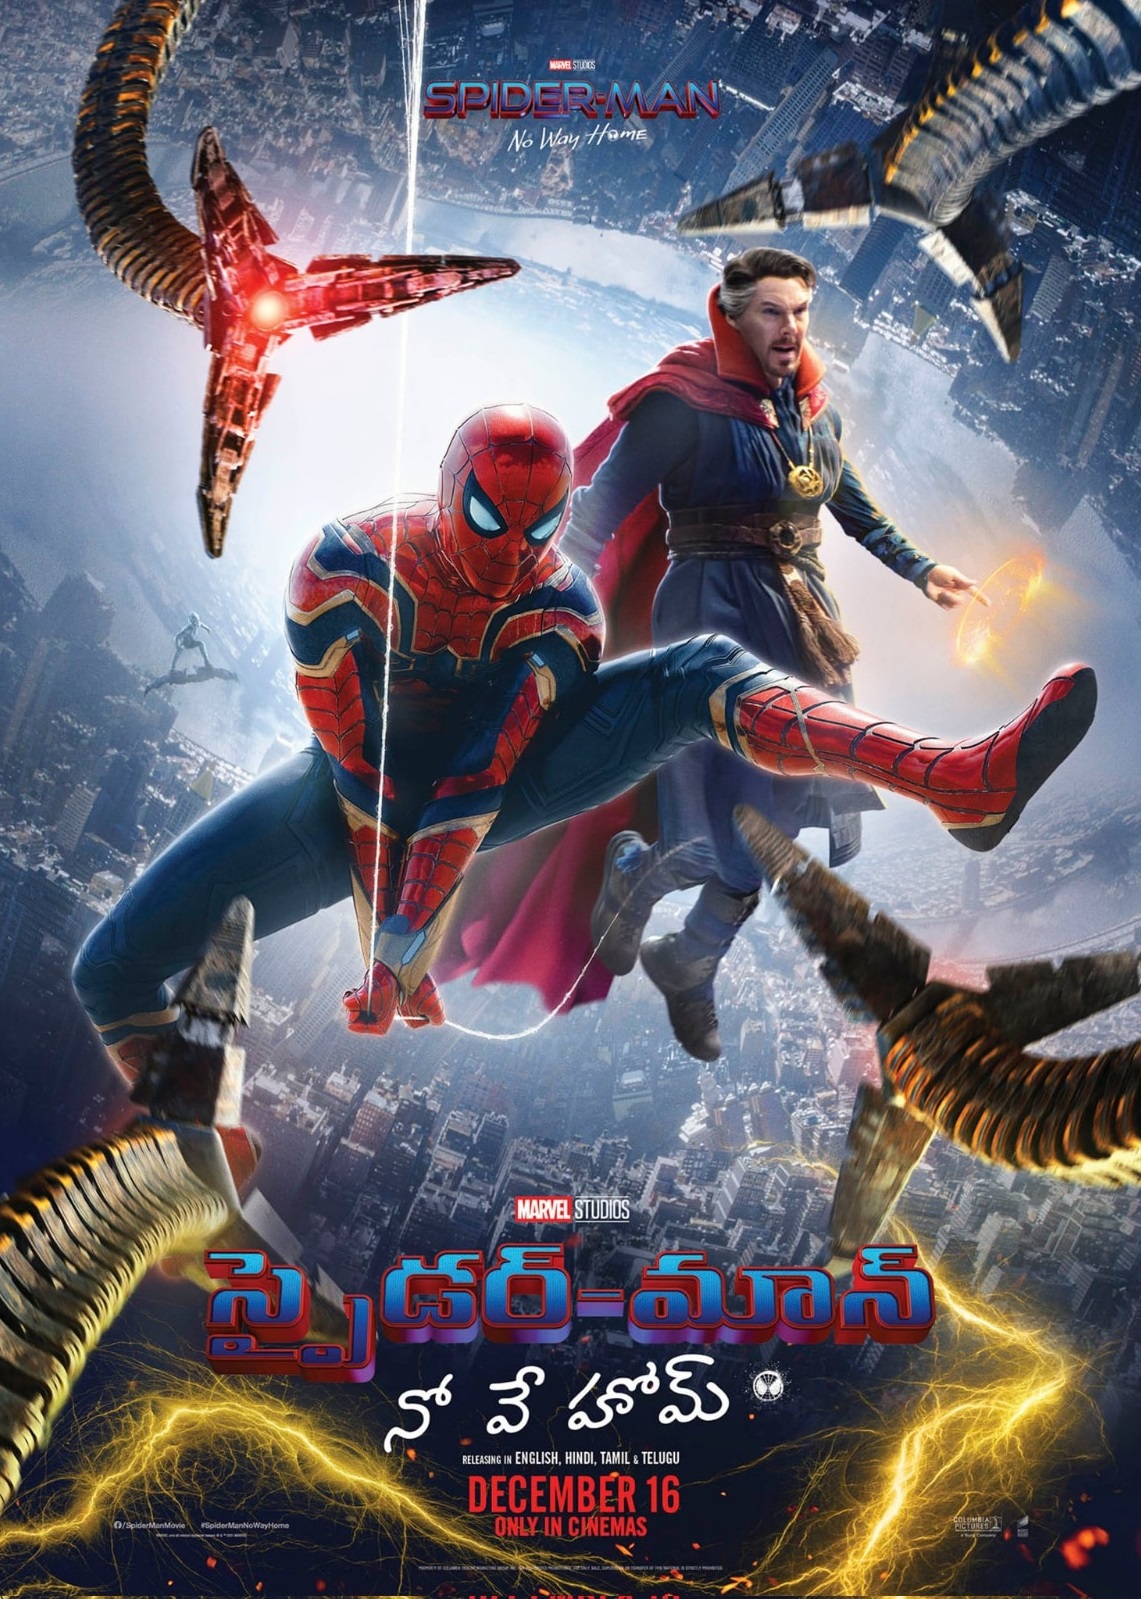 Spider-Man: No Way Home (2021) HDRip Telugu Movie Watch Online Free